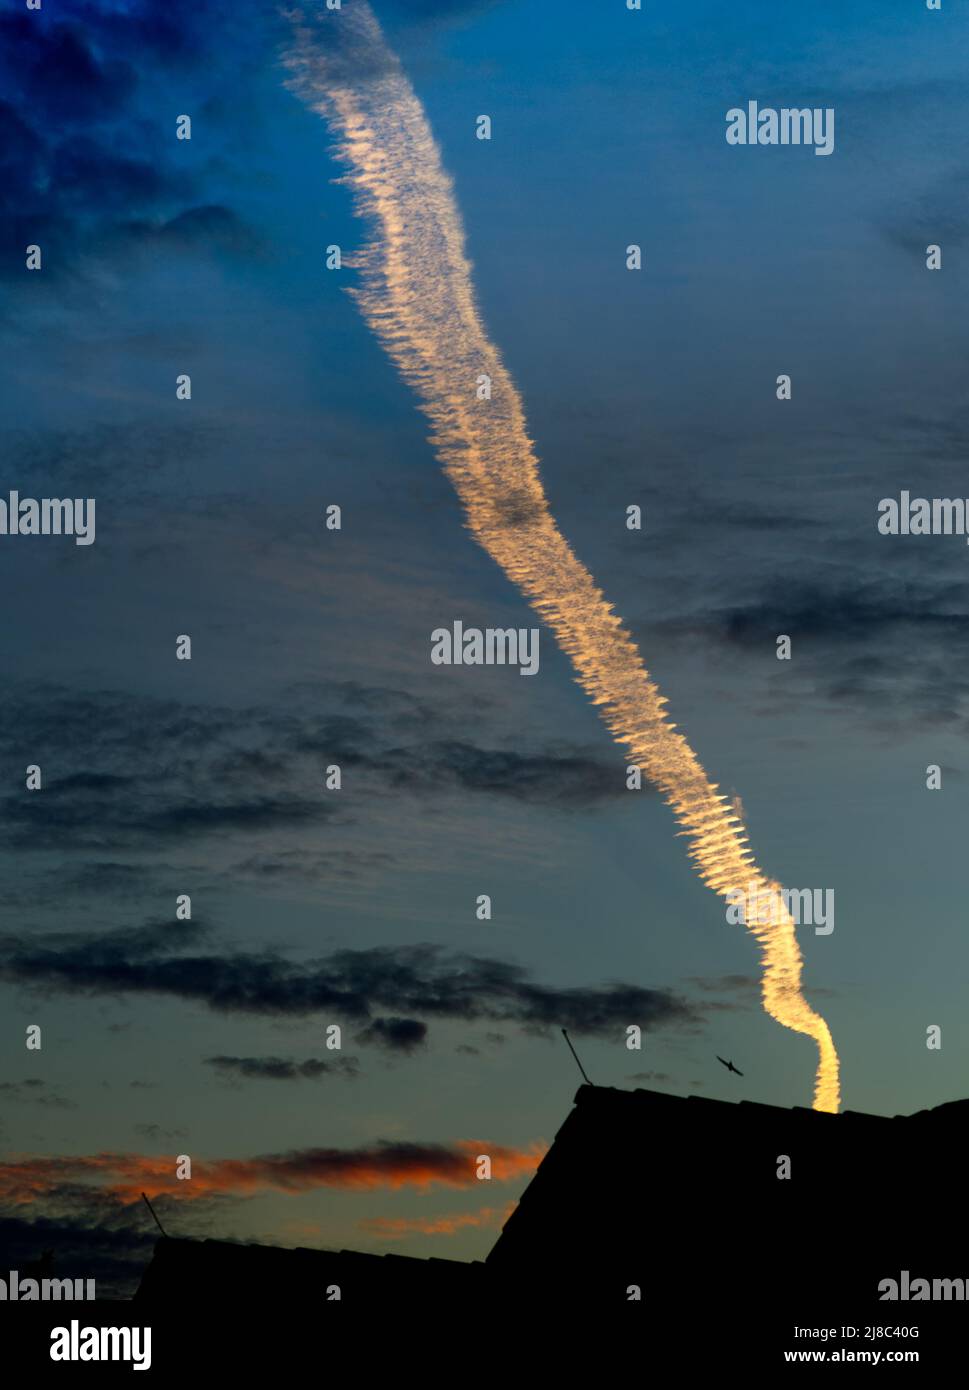 Einzelne ansprechende und leuchtende Kondensstreifen in helloranger Farbe über den Silhouetten von Dächern im dunkelblauen Abendhimmel (aufrechte Form) Stockfoto